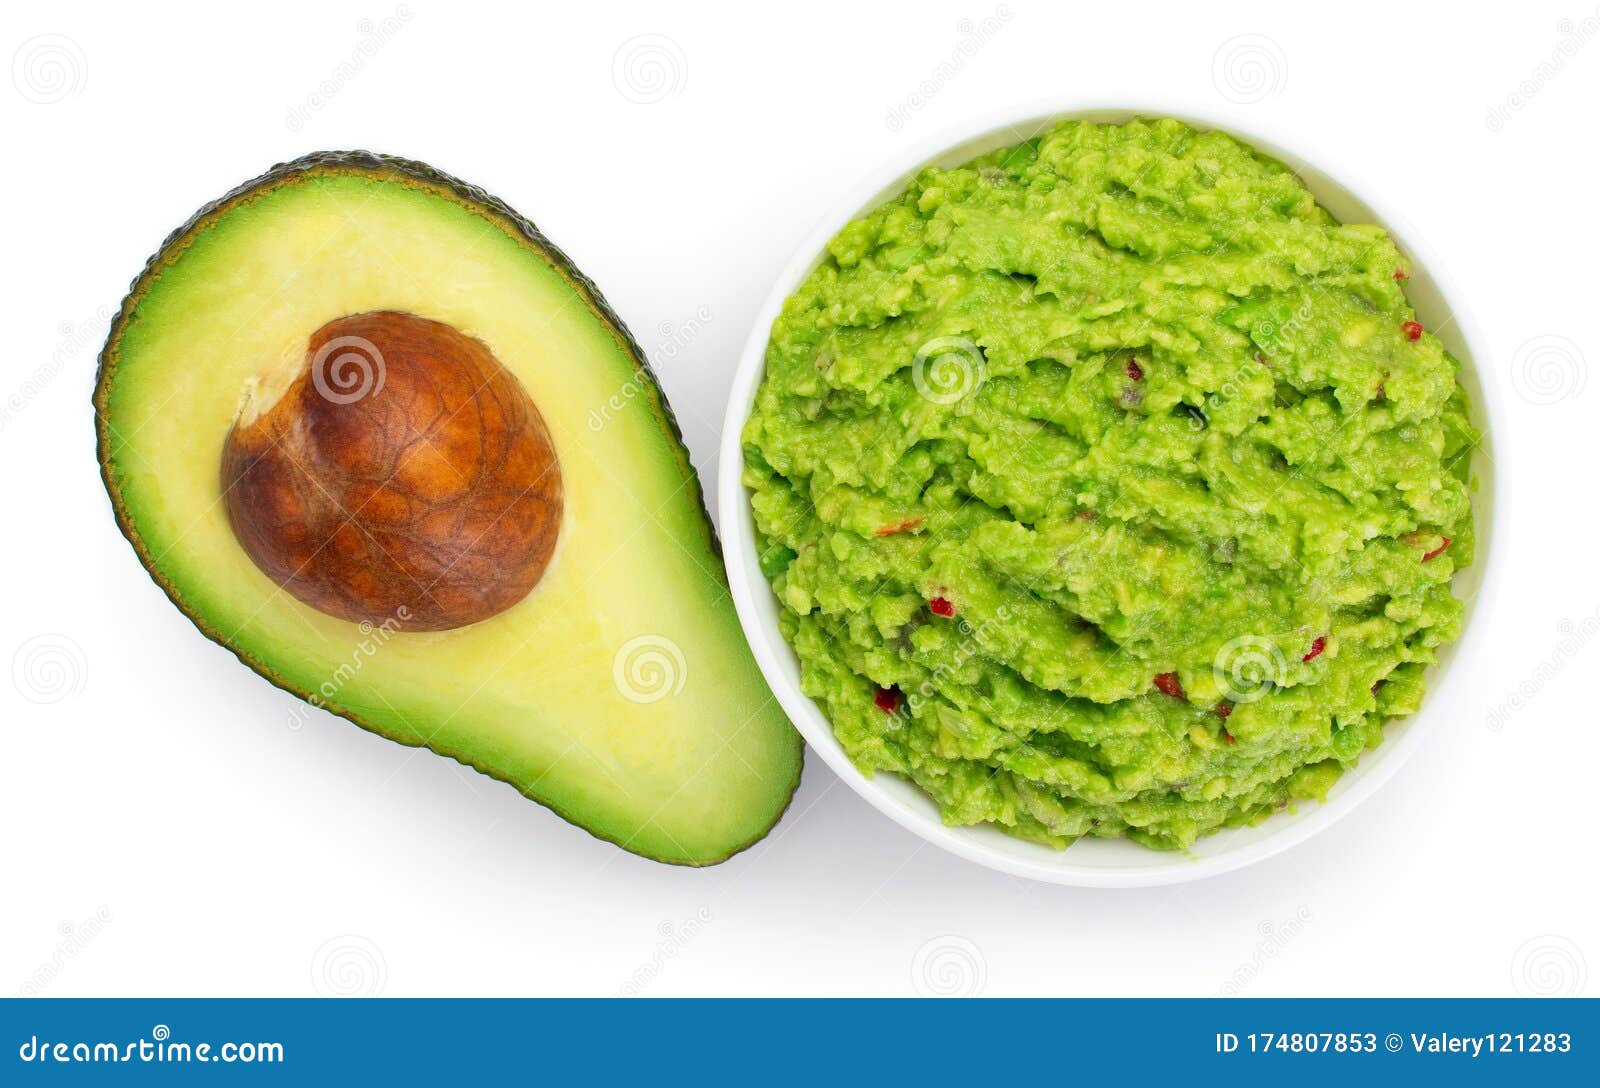 bowl of guacamole with avocado